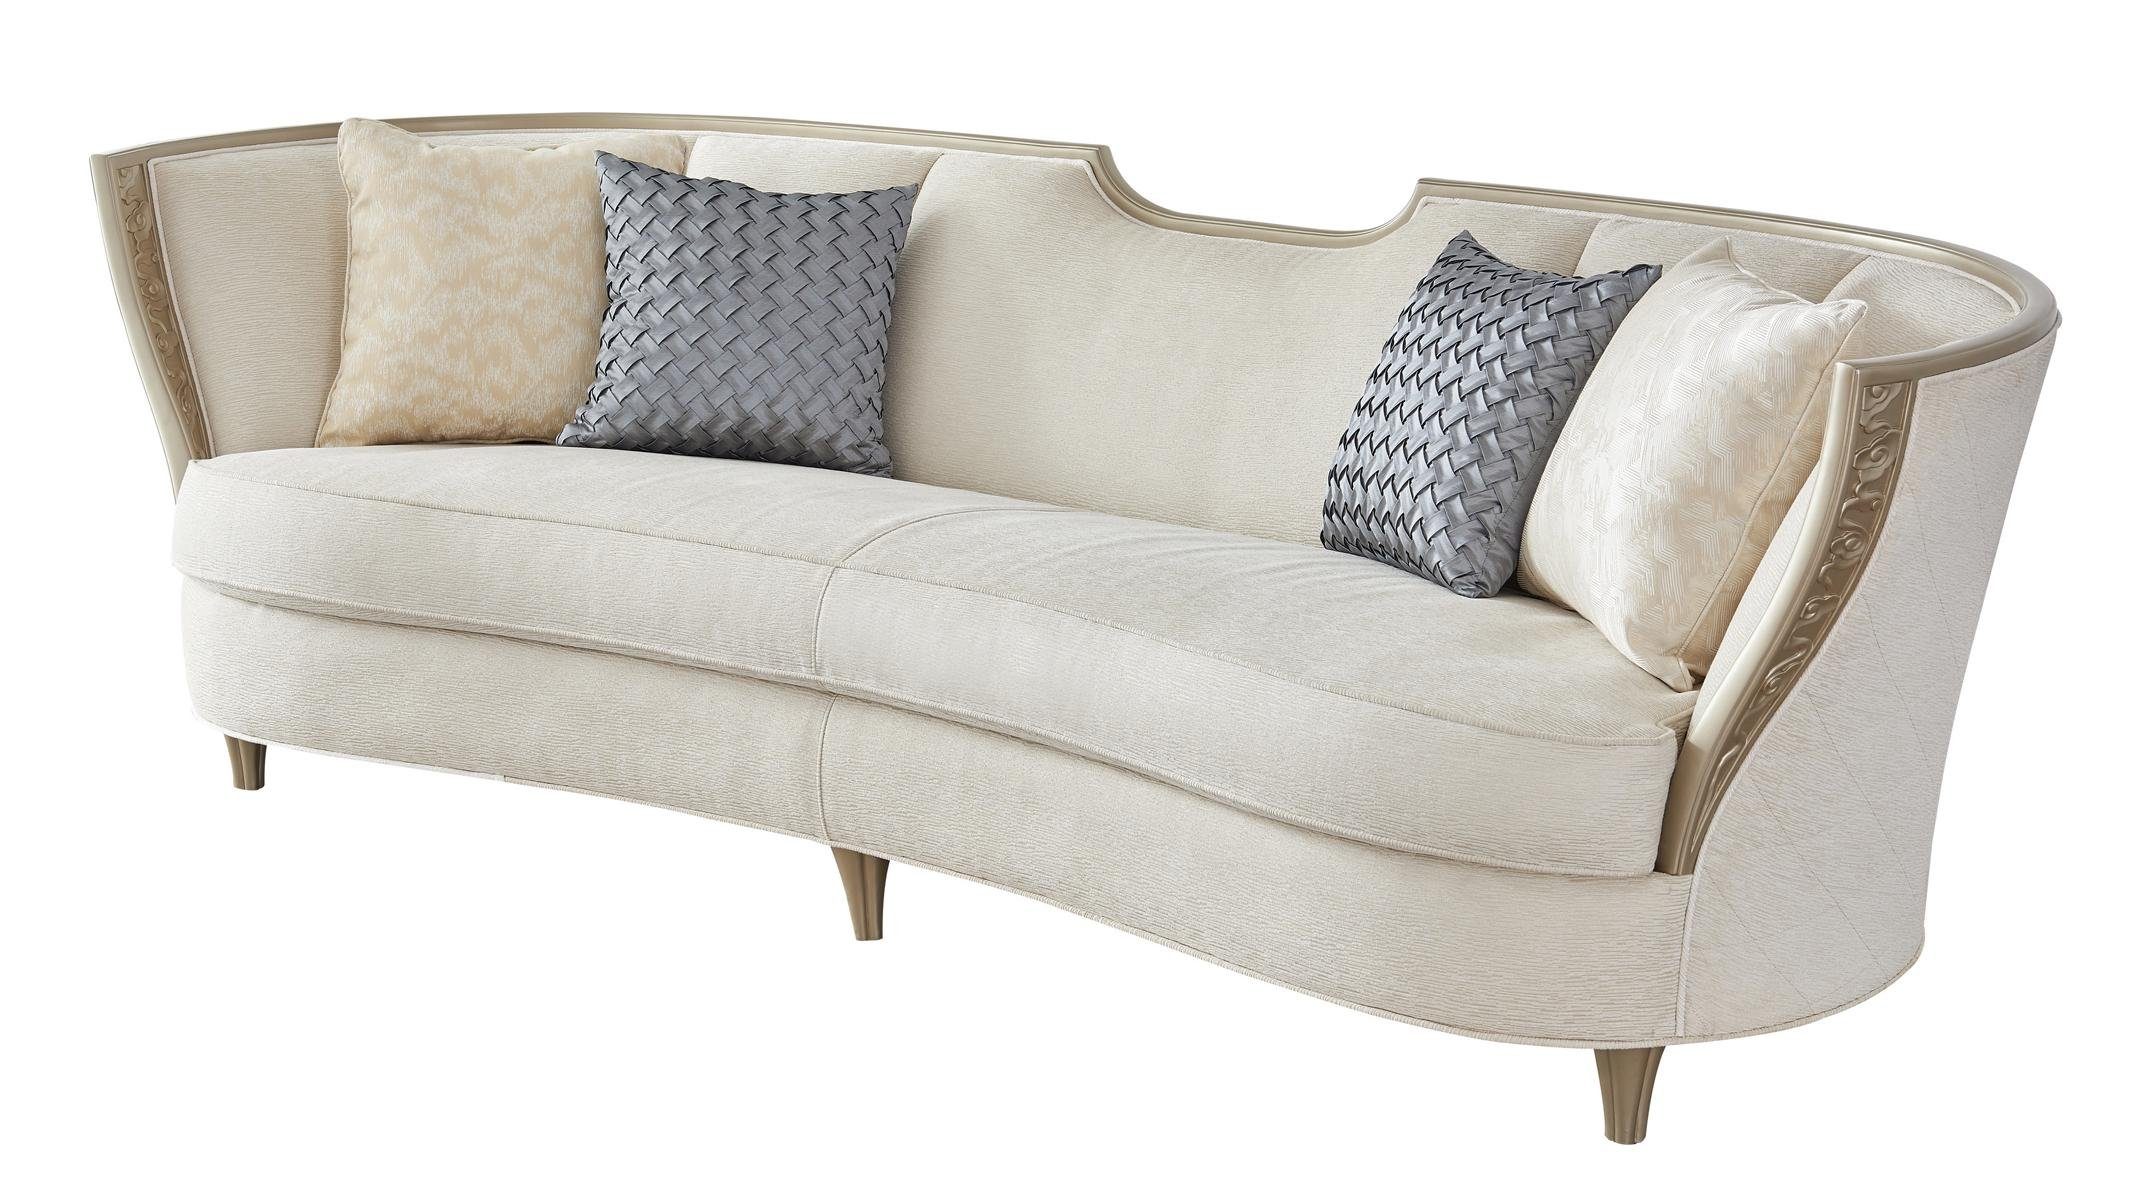 JVmoebel Sofa Luxus beiger xxl Sofa Couch 4Sitzer Polster Wohnzimmer Couch, Made in Europe